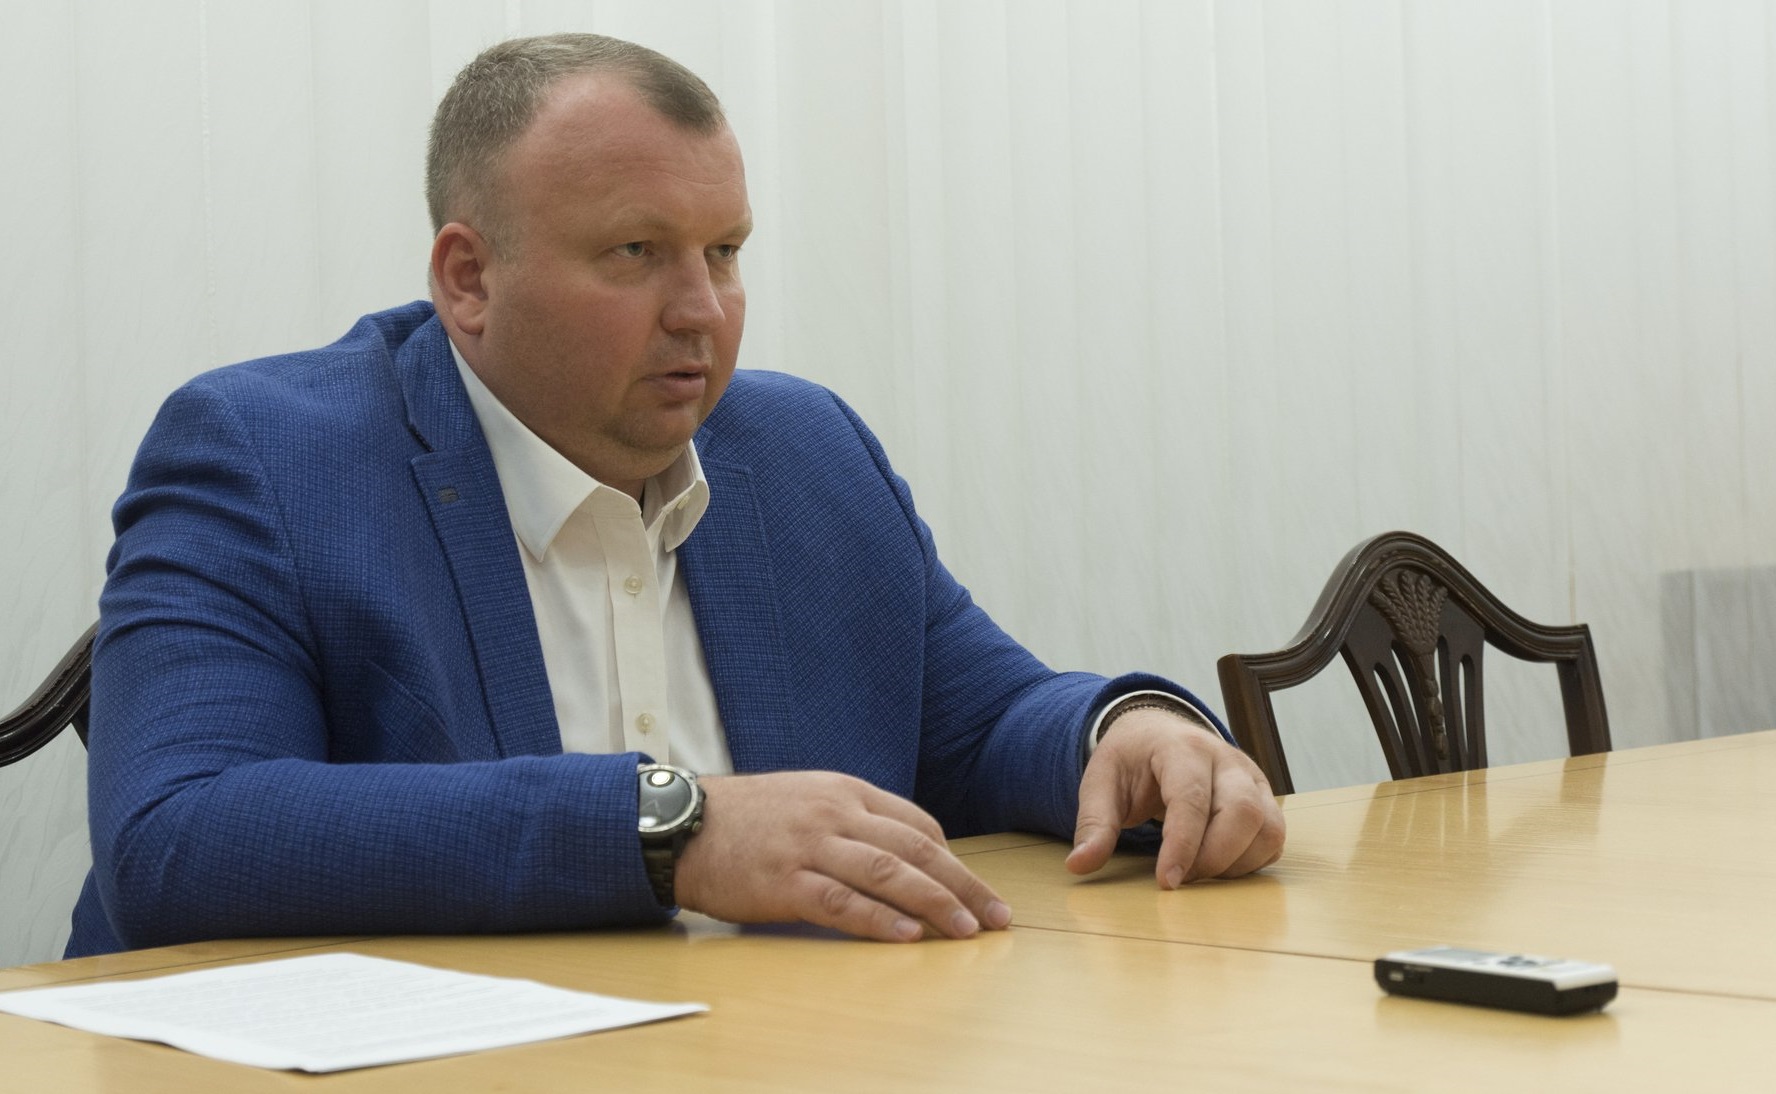 Укроборонпром: Мы покупали запчасти из РФ, но уже на территории Украины